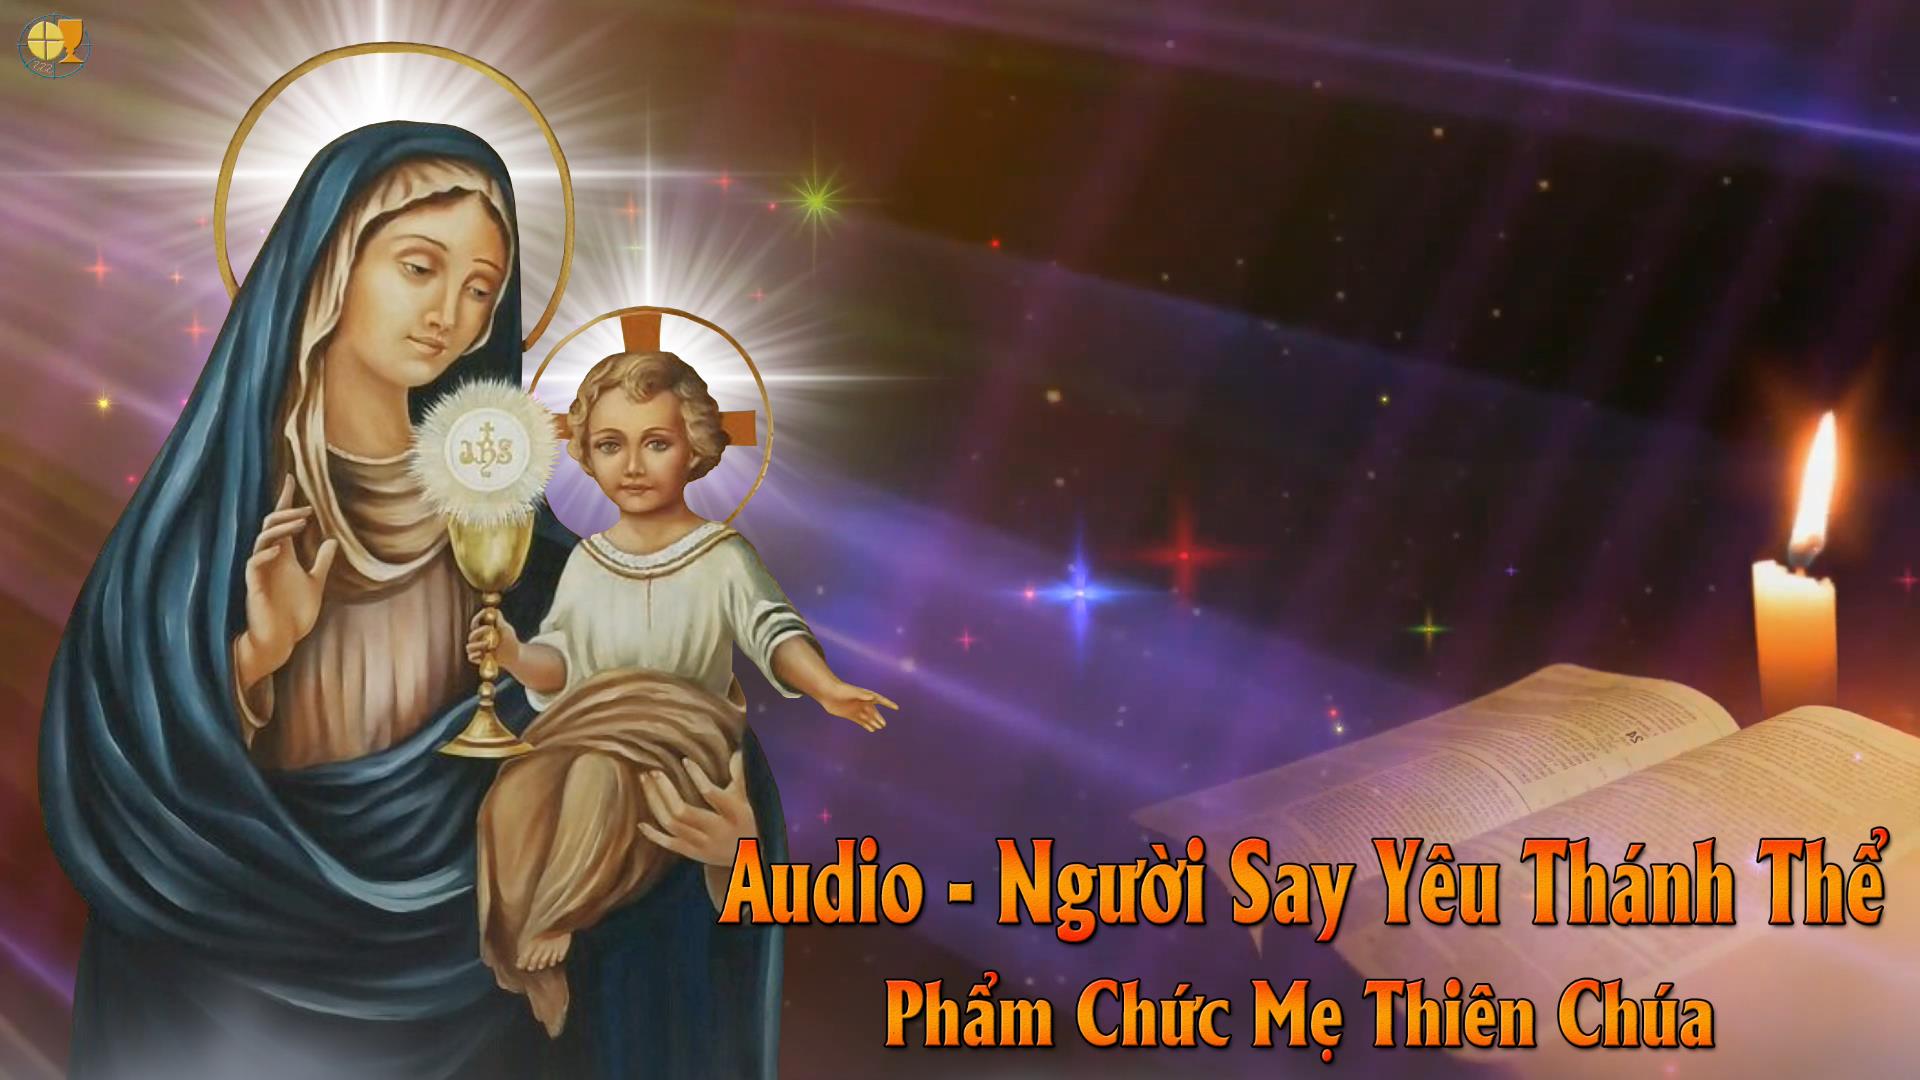 Audio - Phẩm Chức Mẹ Thiên Chúa